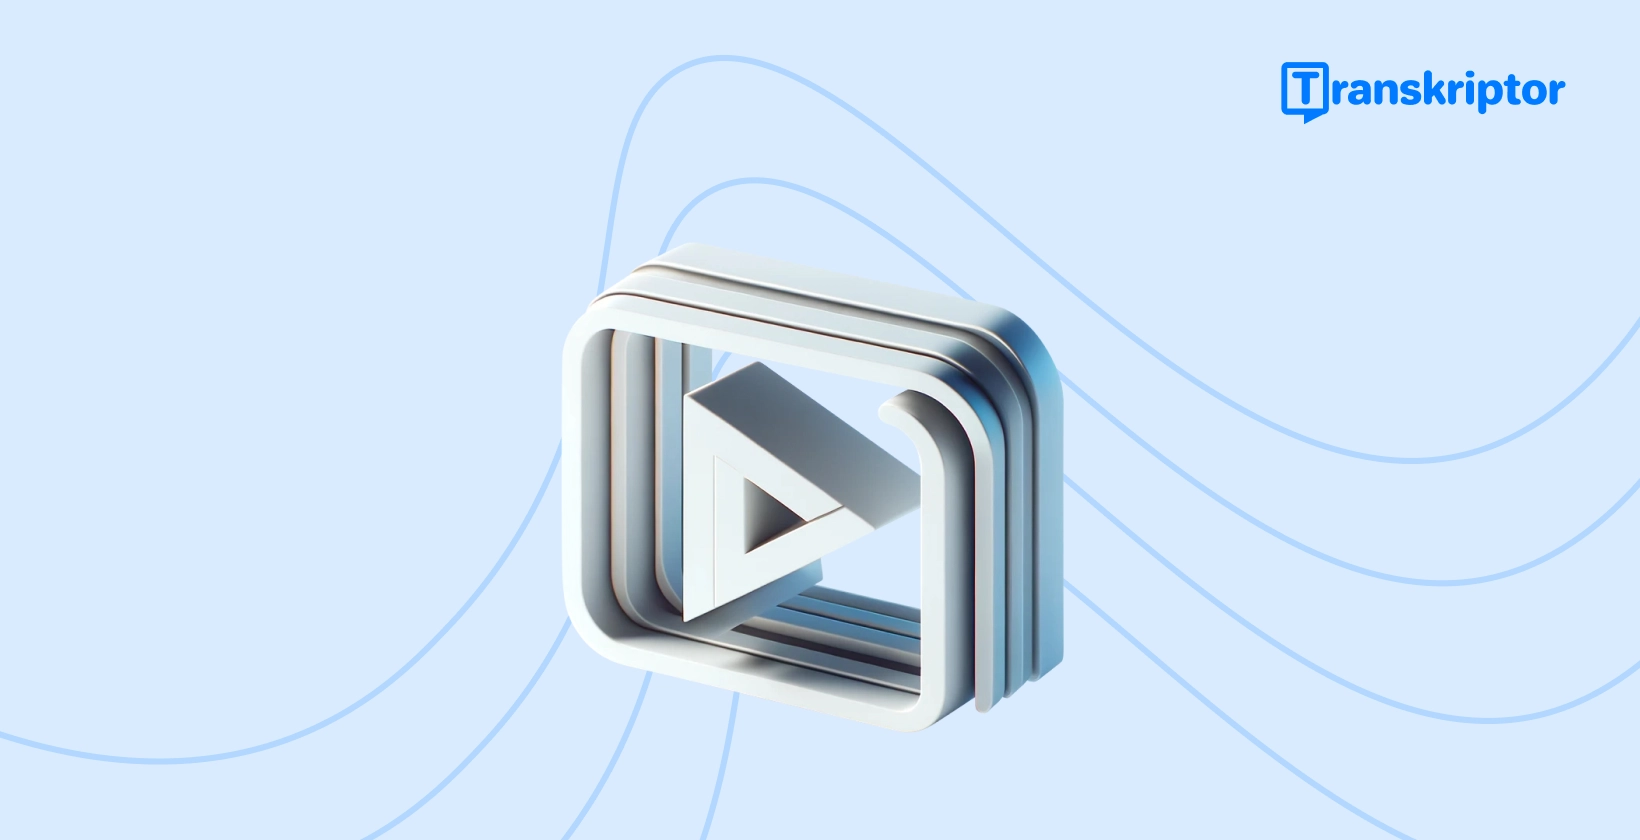 वीडियो में कैप्शन जोड़ने पर चरण-दर-चरण ट्यूटोरियल बैनर, वीडियो संपादन के प्रतीक प्ले बटन आइकन के साथ।